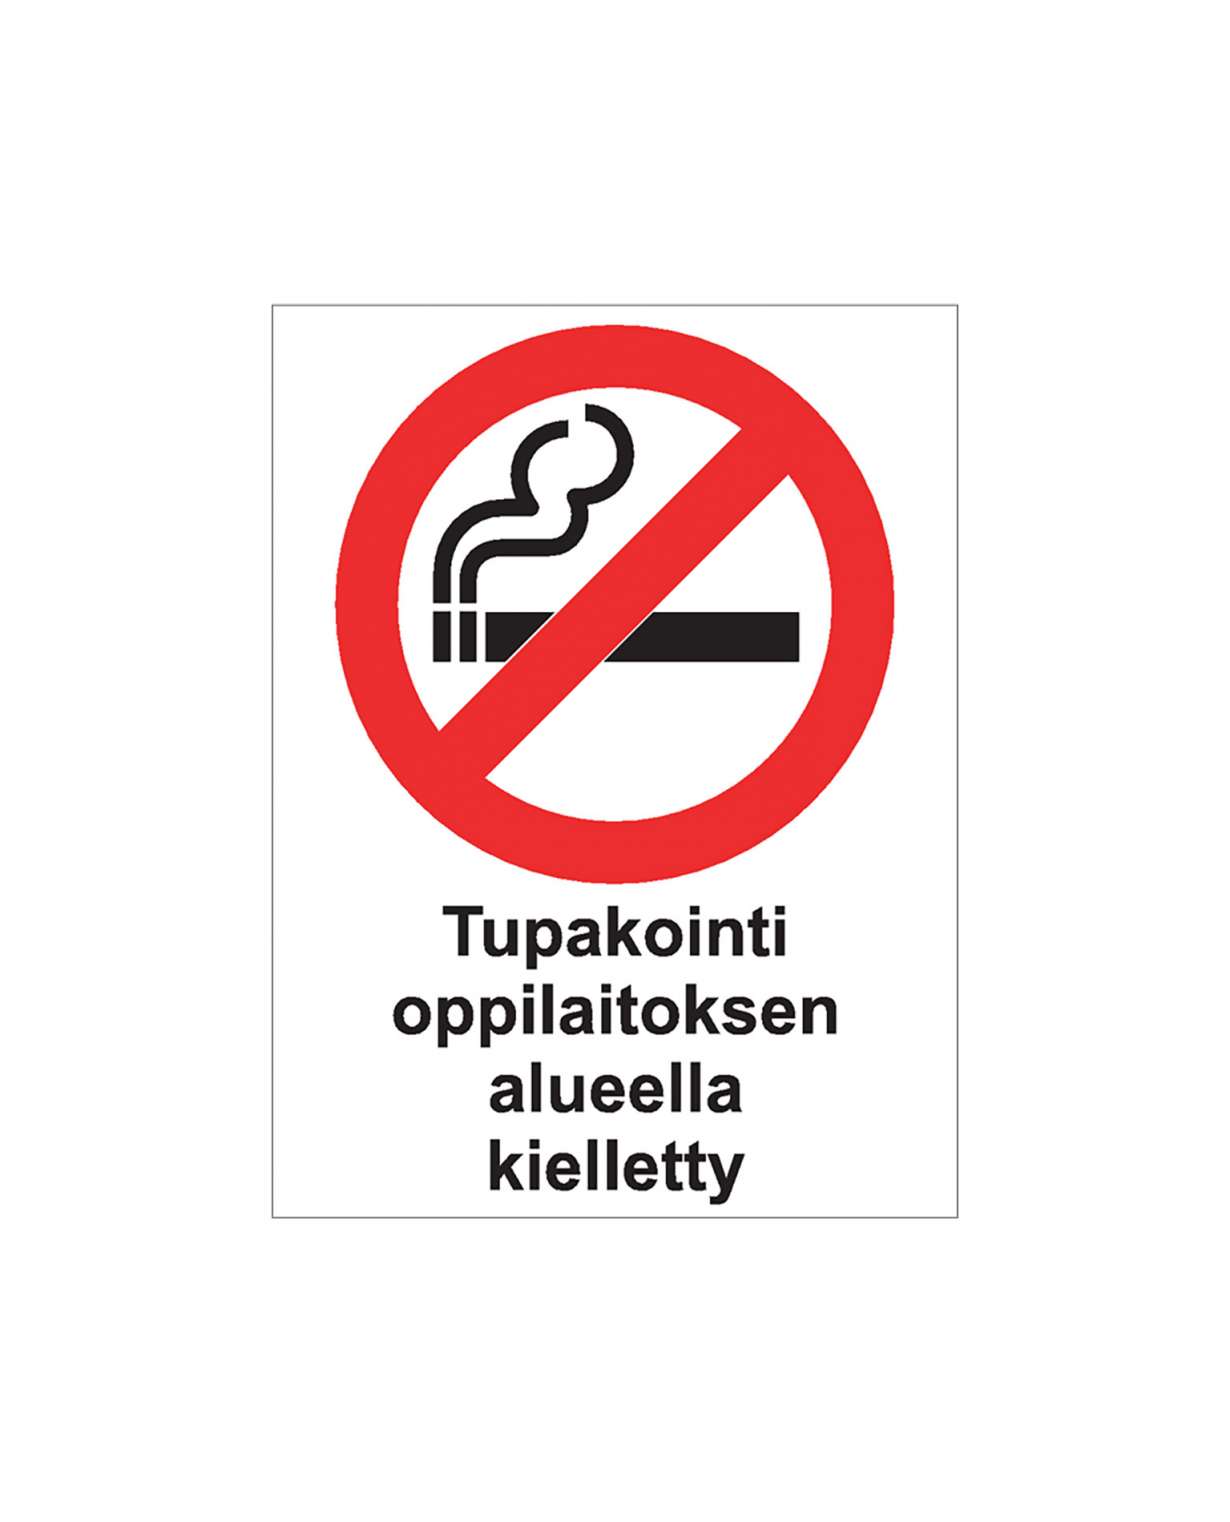 Tupakointi oppilaitoksen alueella kielletty, Ibond alumiini, 200x300 mm